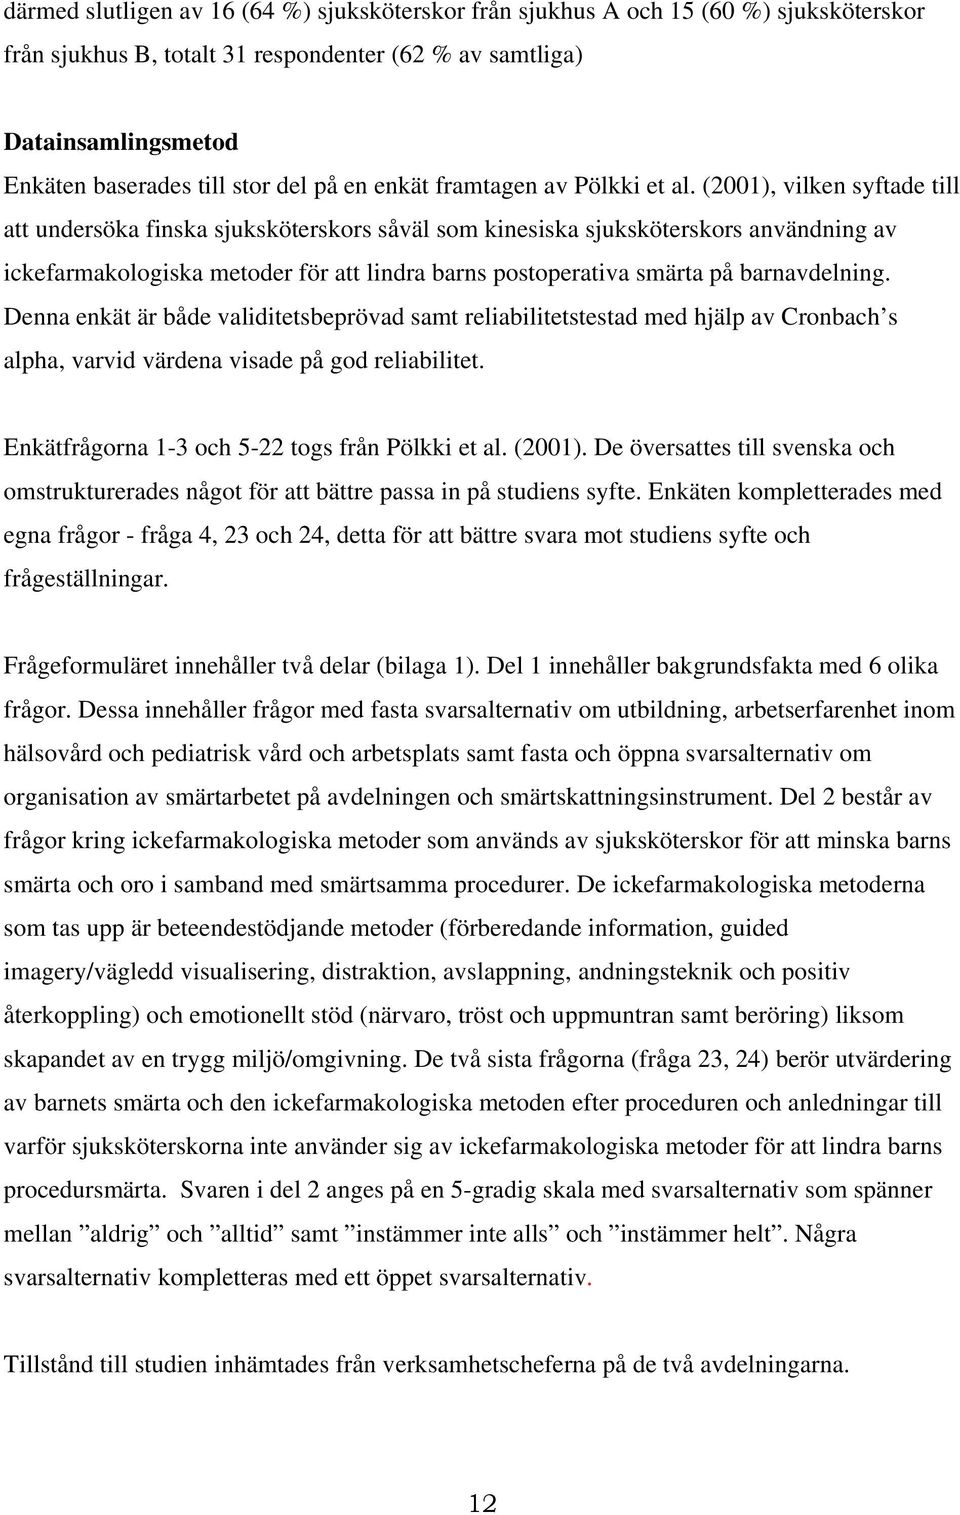 (2001), vilken syftade till att undersöka finska sjuksköterskors såväl som kinesiska sjuksköterskors användning av ickefarmakologiska metoder för att lindra barns postoperativa smärta på